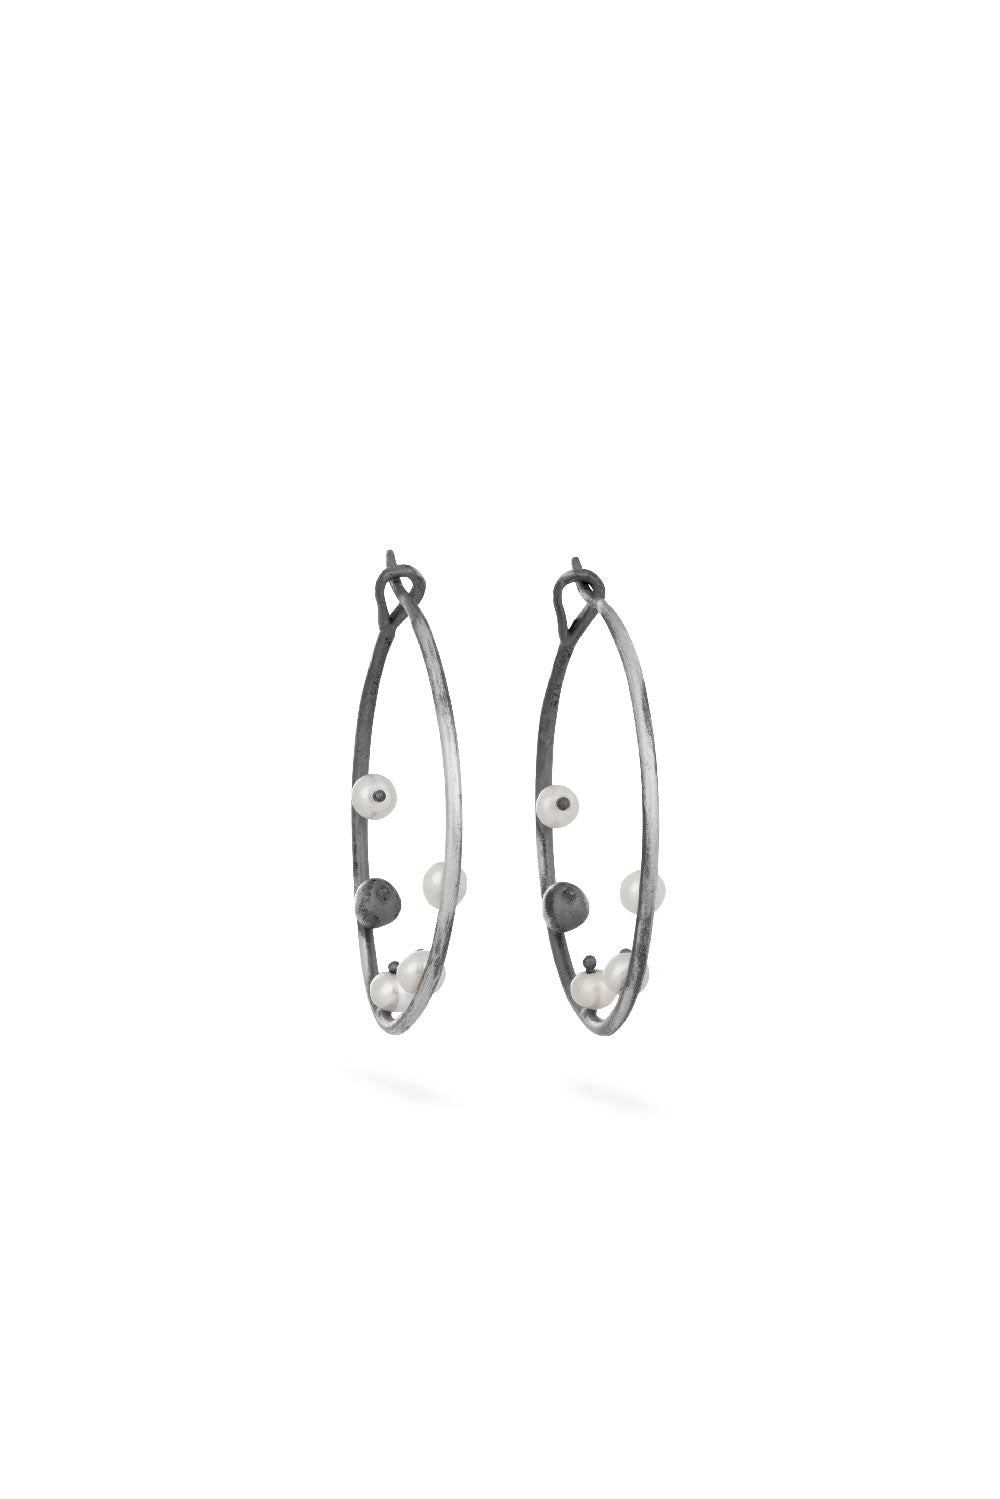 Sea earrings - big silver hoops with pearls